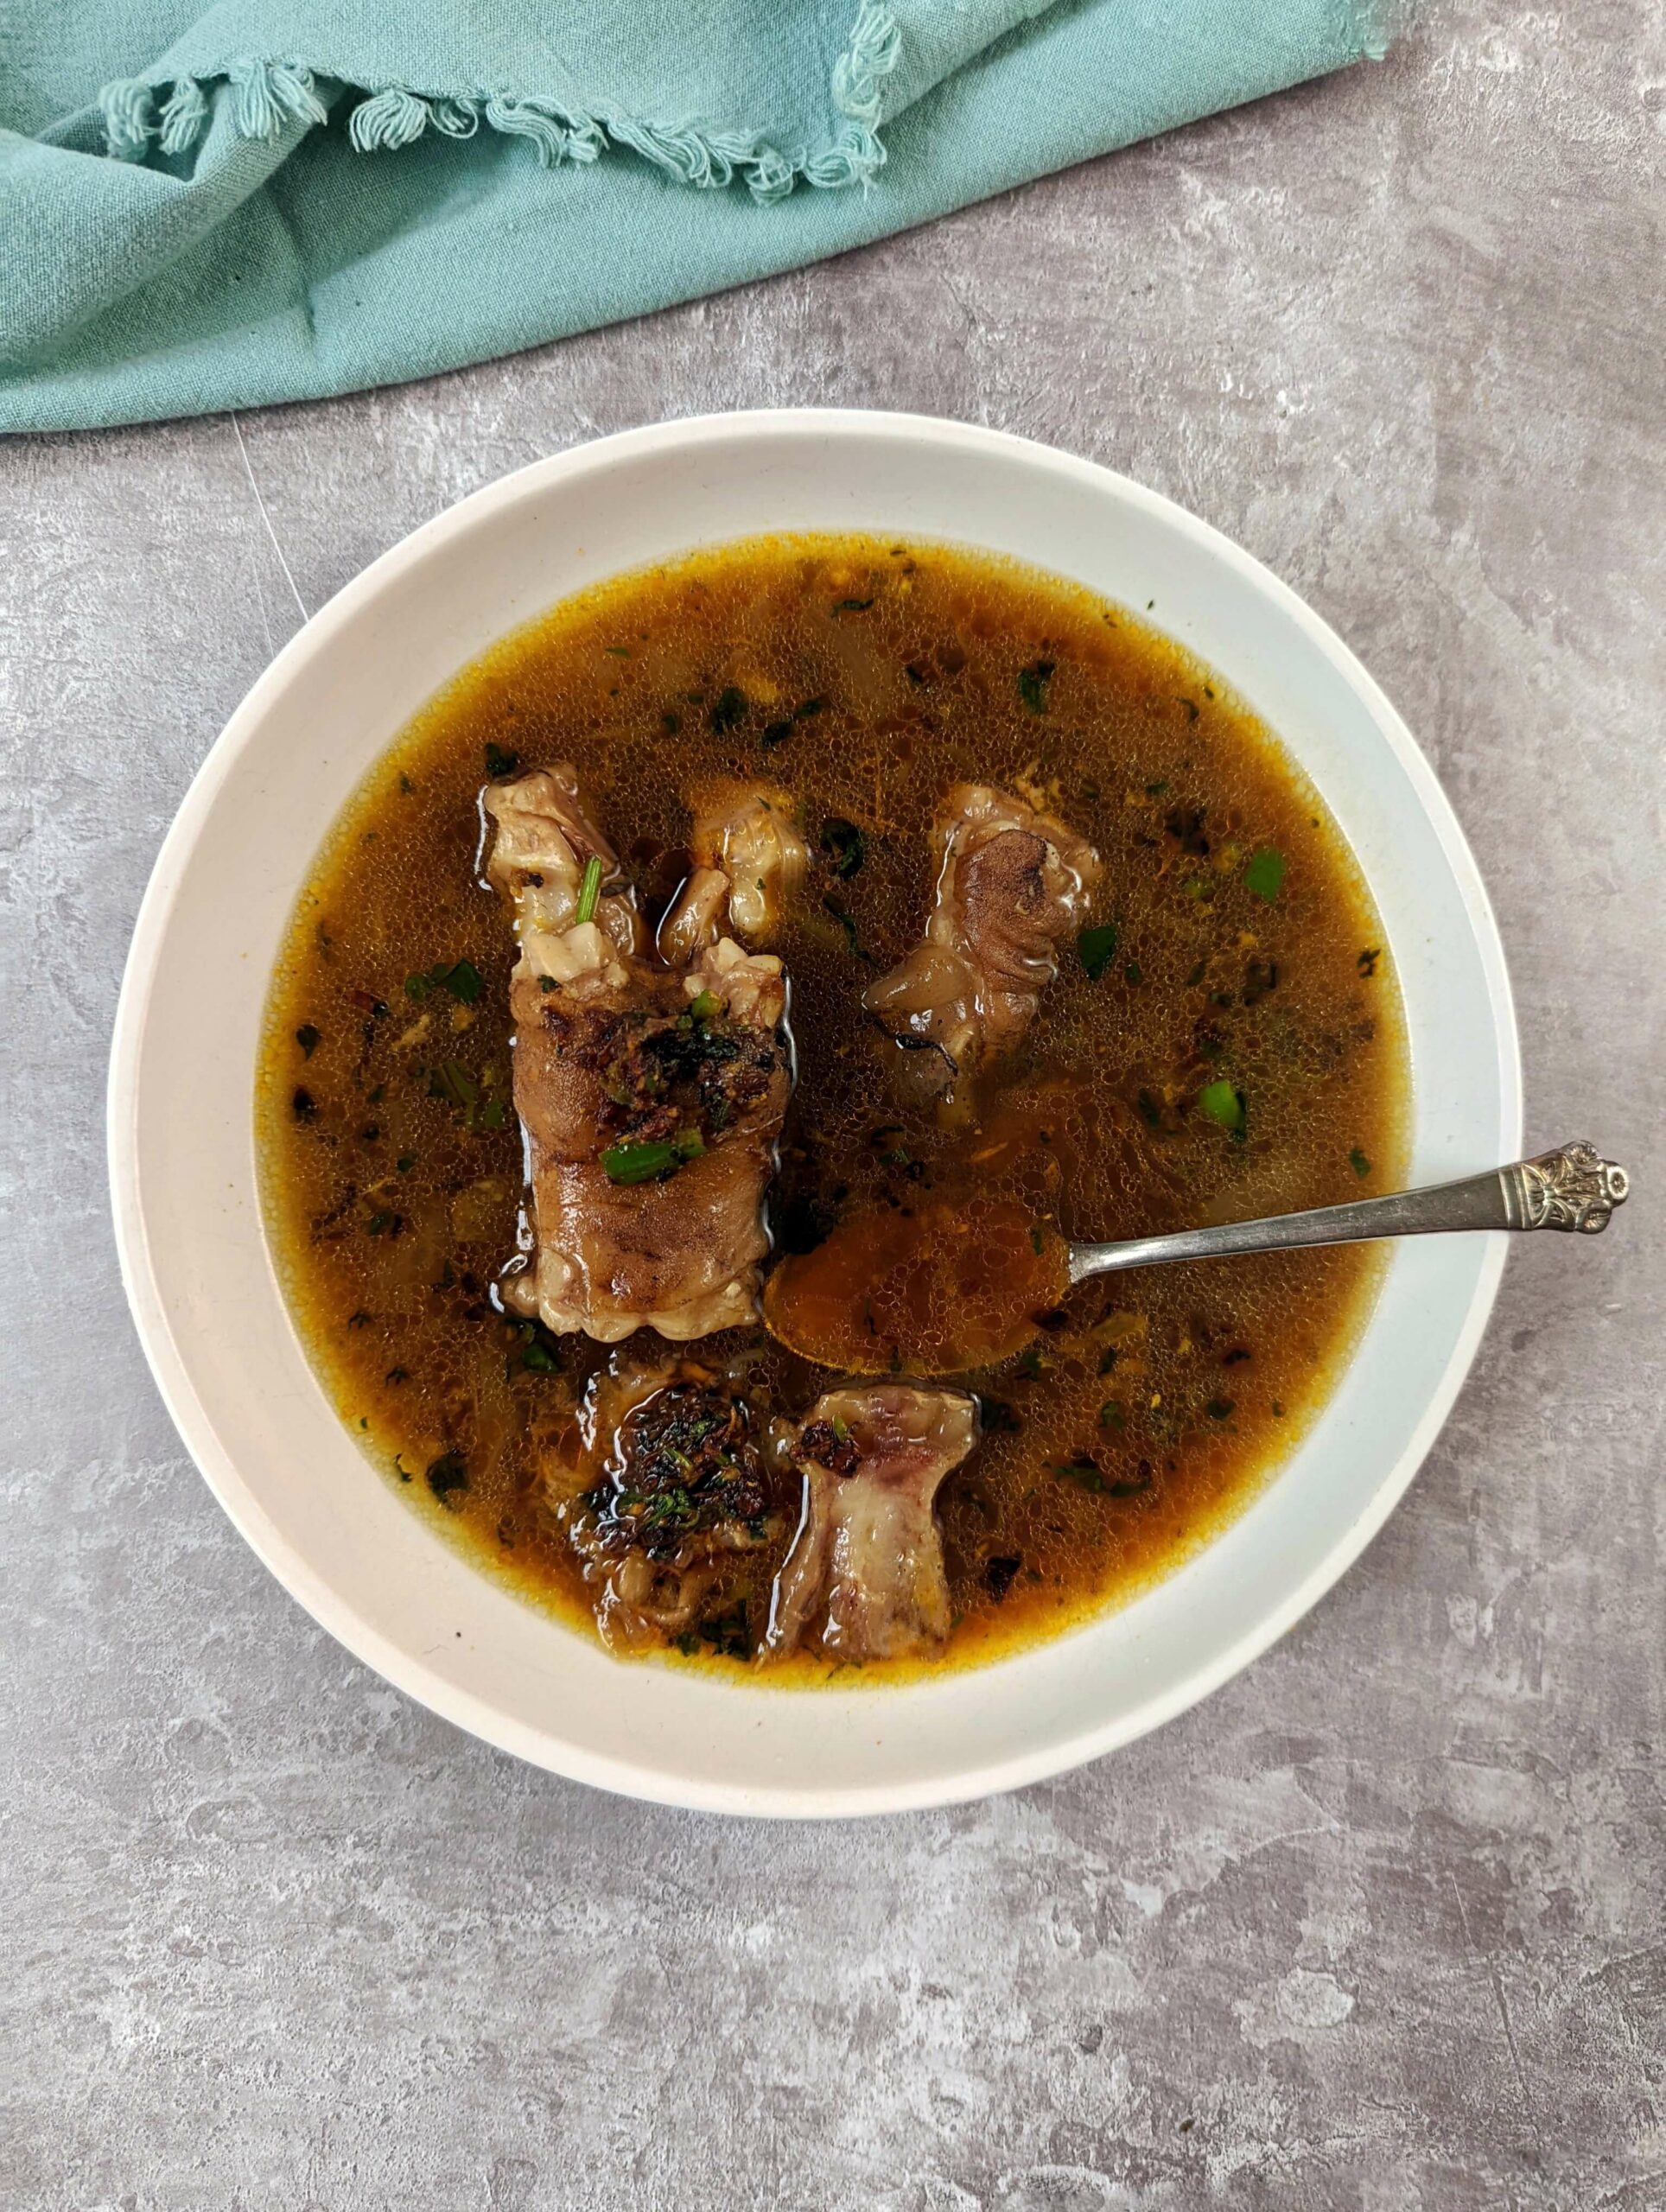 Mutton paya soup in a serving bowl.